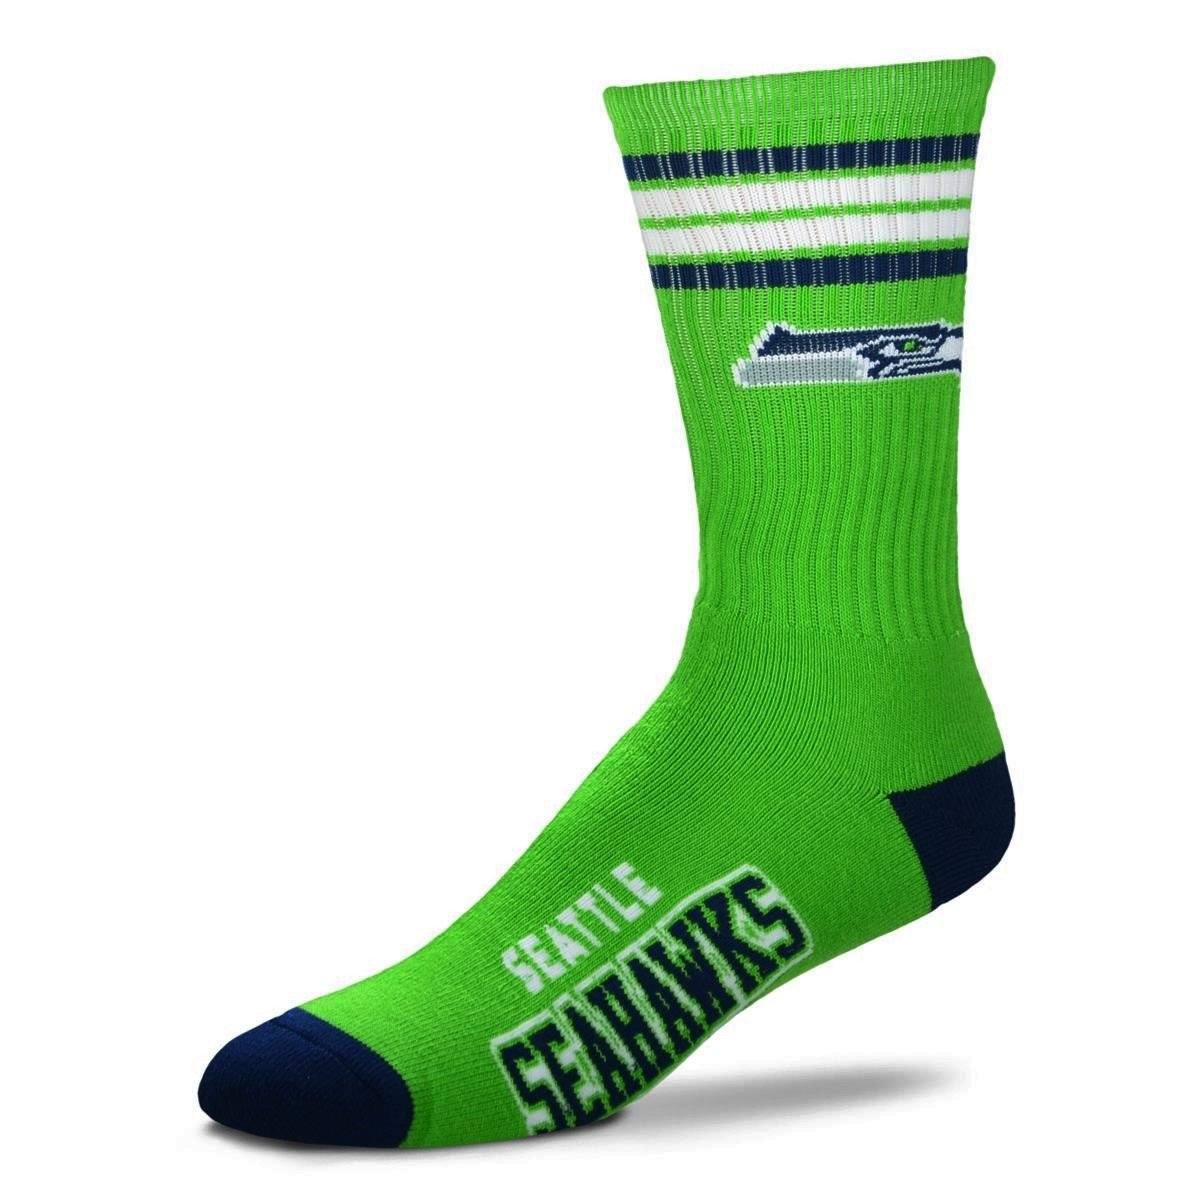 For Bare Feet - Seattle Seahawks Crew Socks | Women's - Knock Your Socks Off